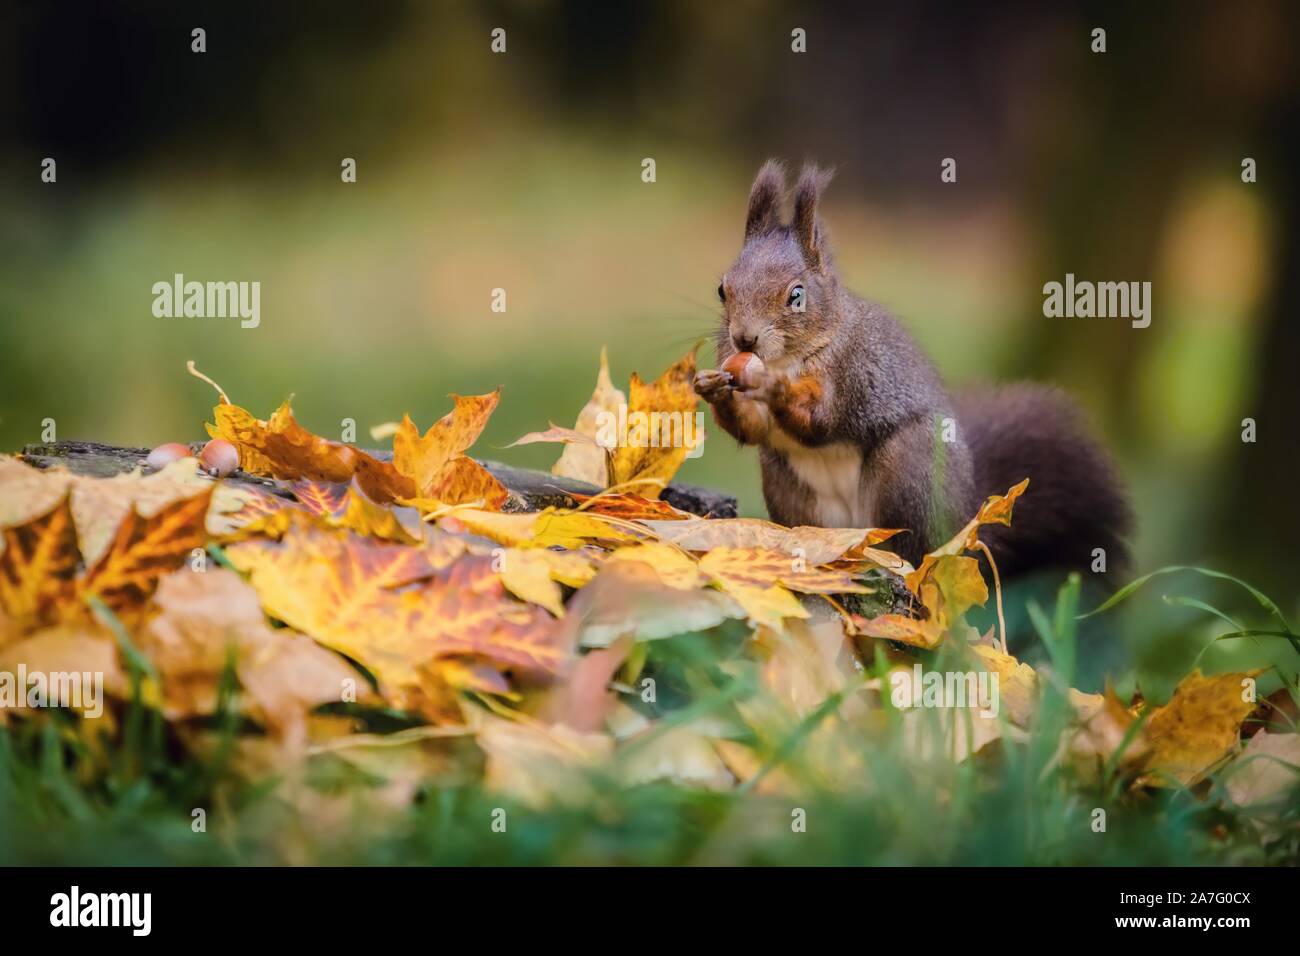 Écureuil rouge eurasien faim assis sur une souche d'arbre couverts de feuilles de couleur noisette tenant dans ses pattes. Jour d'automne dans une forêt profonde. Banque D'Images